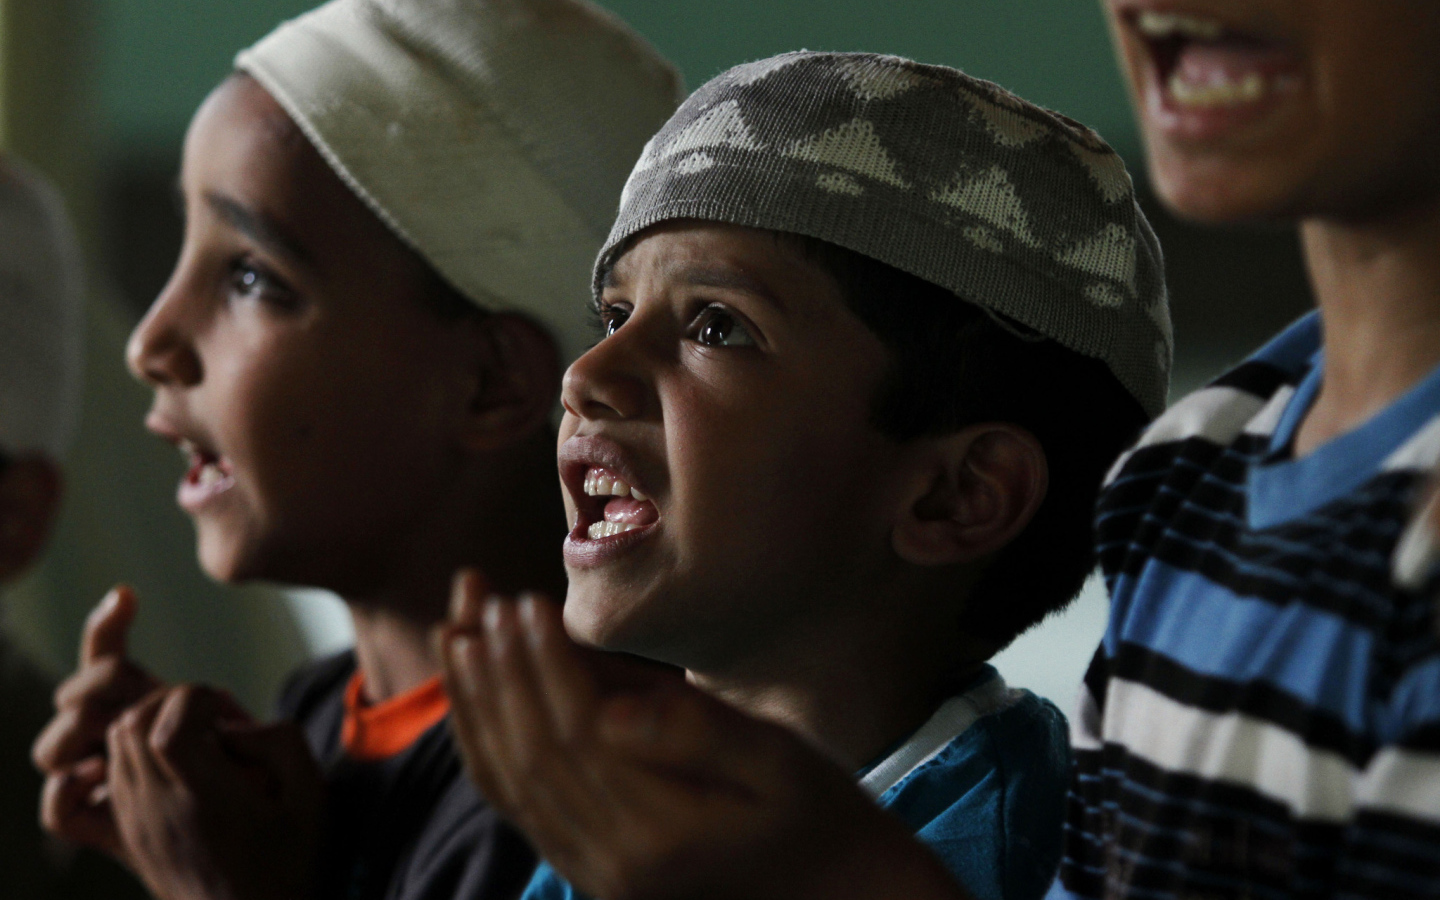 Little kids at Ramadan